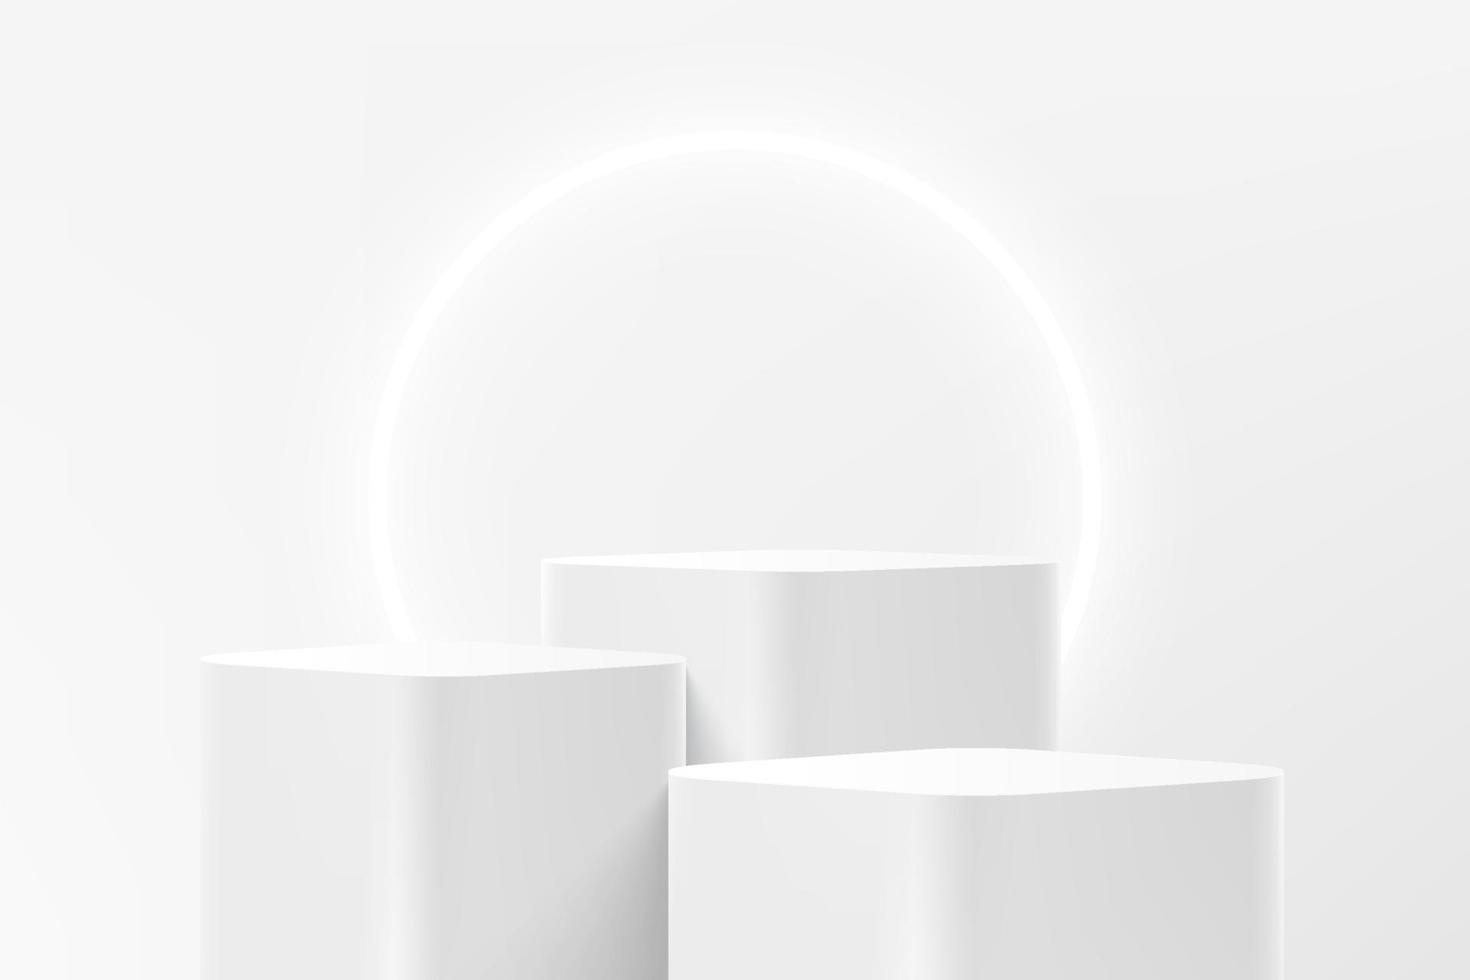 escalones blancos 3d abstractos pedestal de cubo de esquina redonda o podio de pie con fondo de anillo de neón brillante. escena de pared mínima blanca para la presentación de productos. plataforma de representación geométrica vectorial. vector